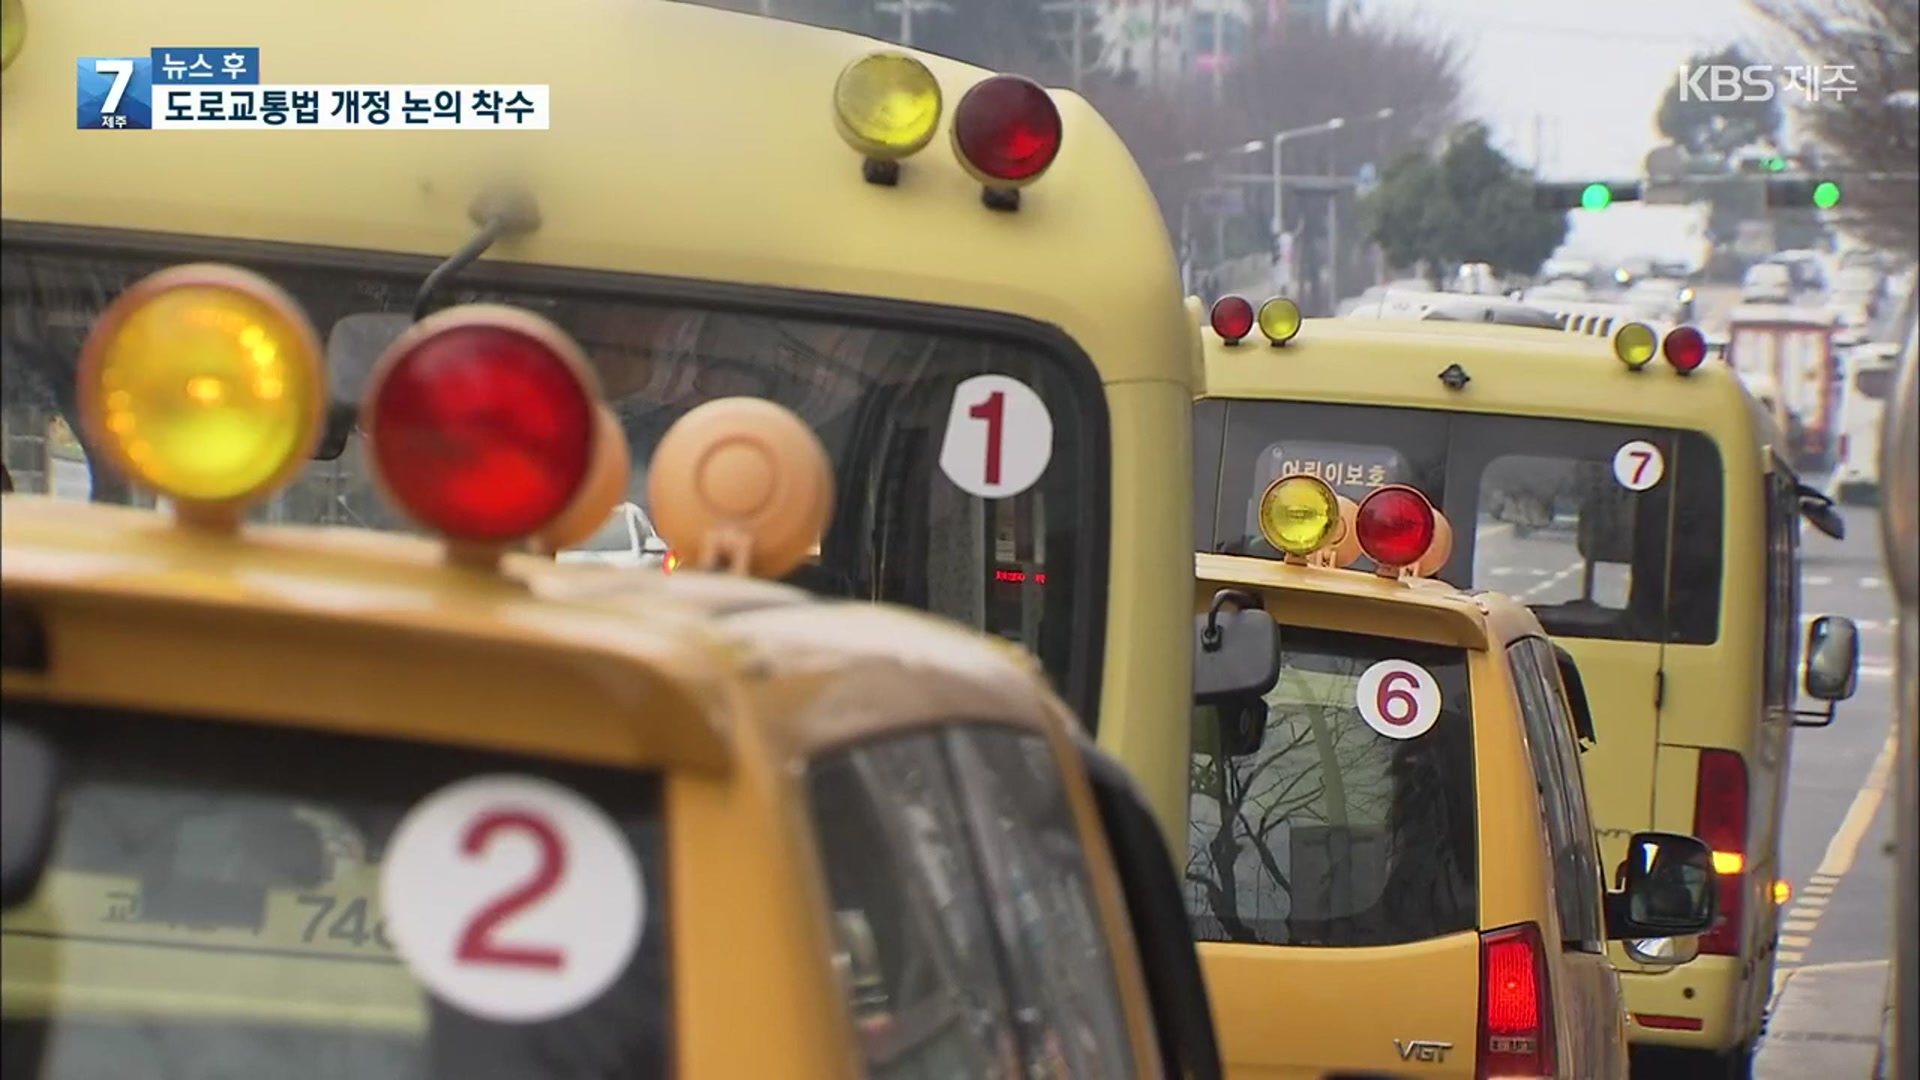 [뉴스후] 어린이 통학버스 사고 막기 위해 도로교통법 손본다